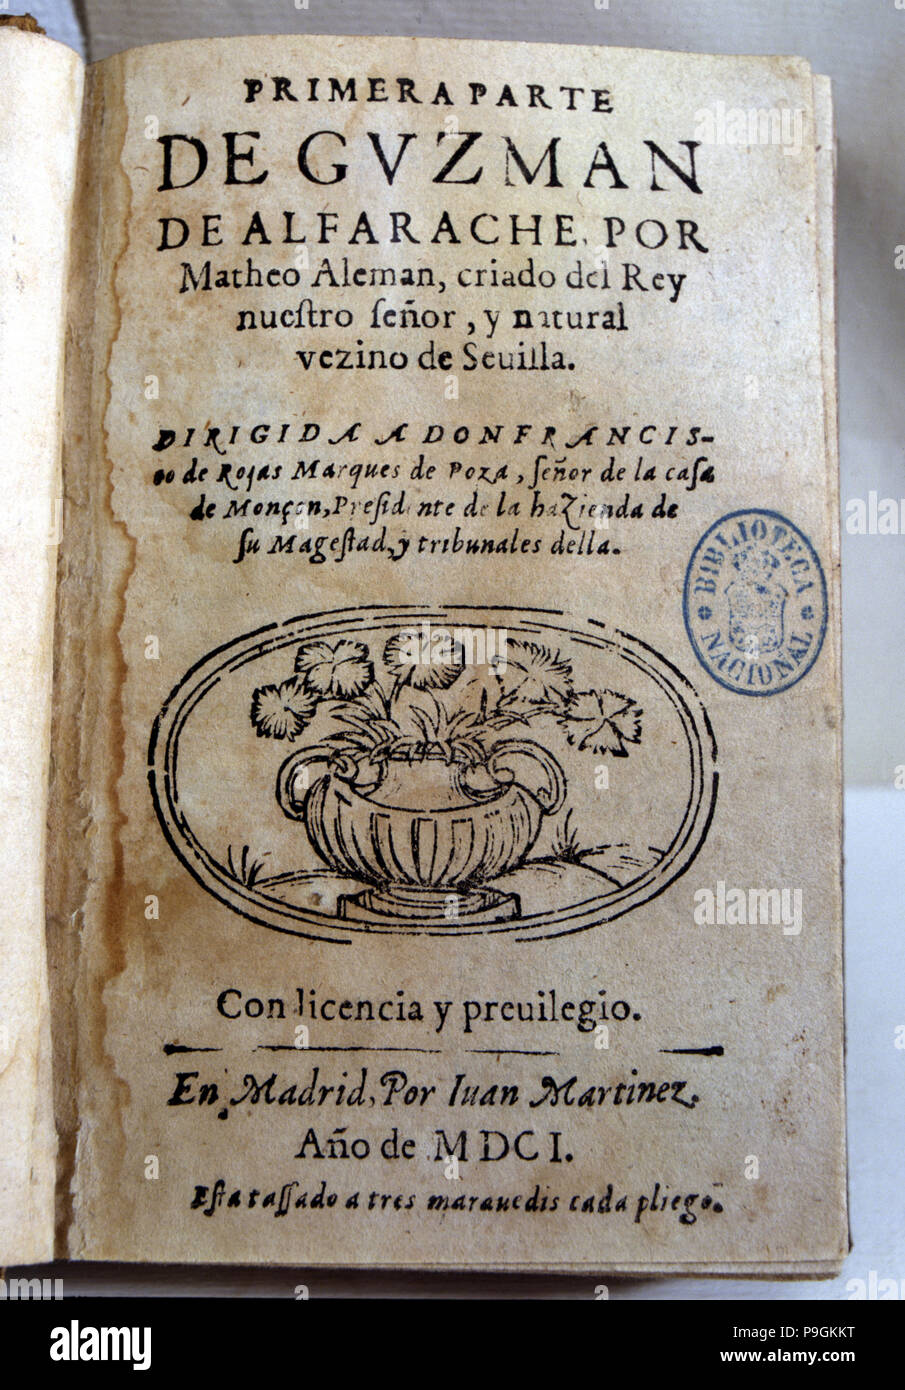 Coperchio della prima parte del lavoro 'Guzman Alfarache" Mateo Alemán, pubblicato nel 1601. Foto Stock